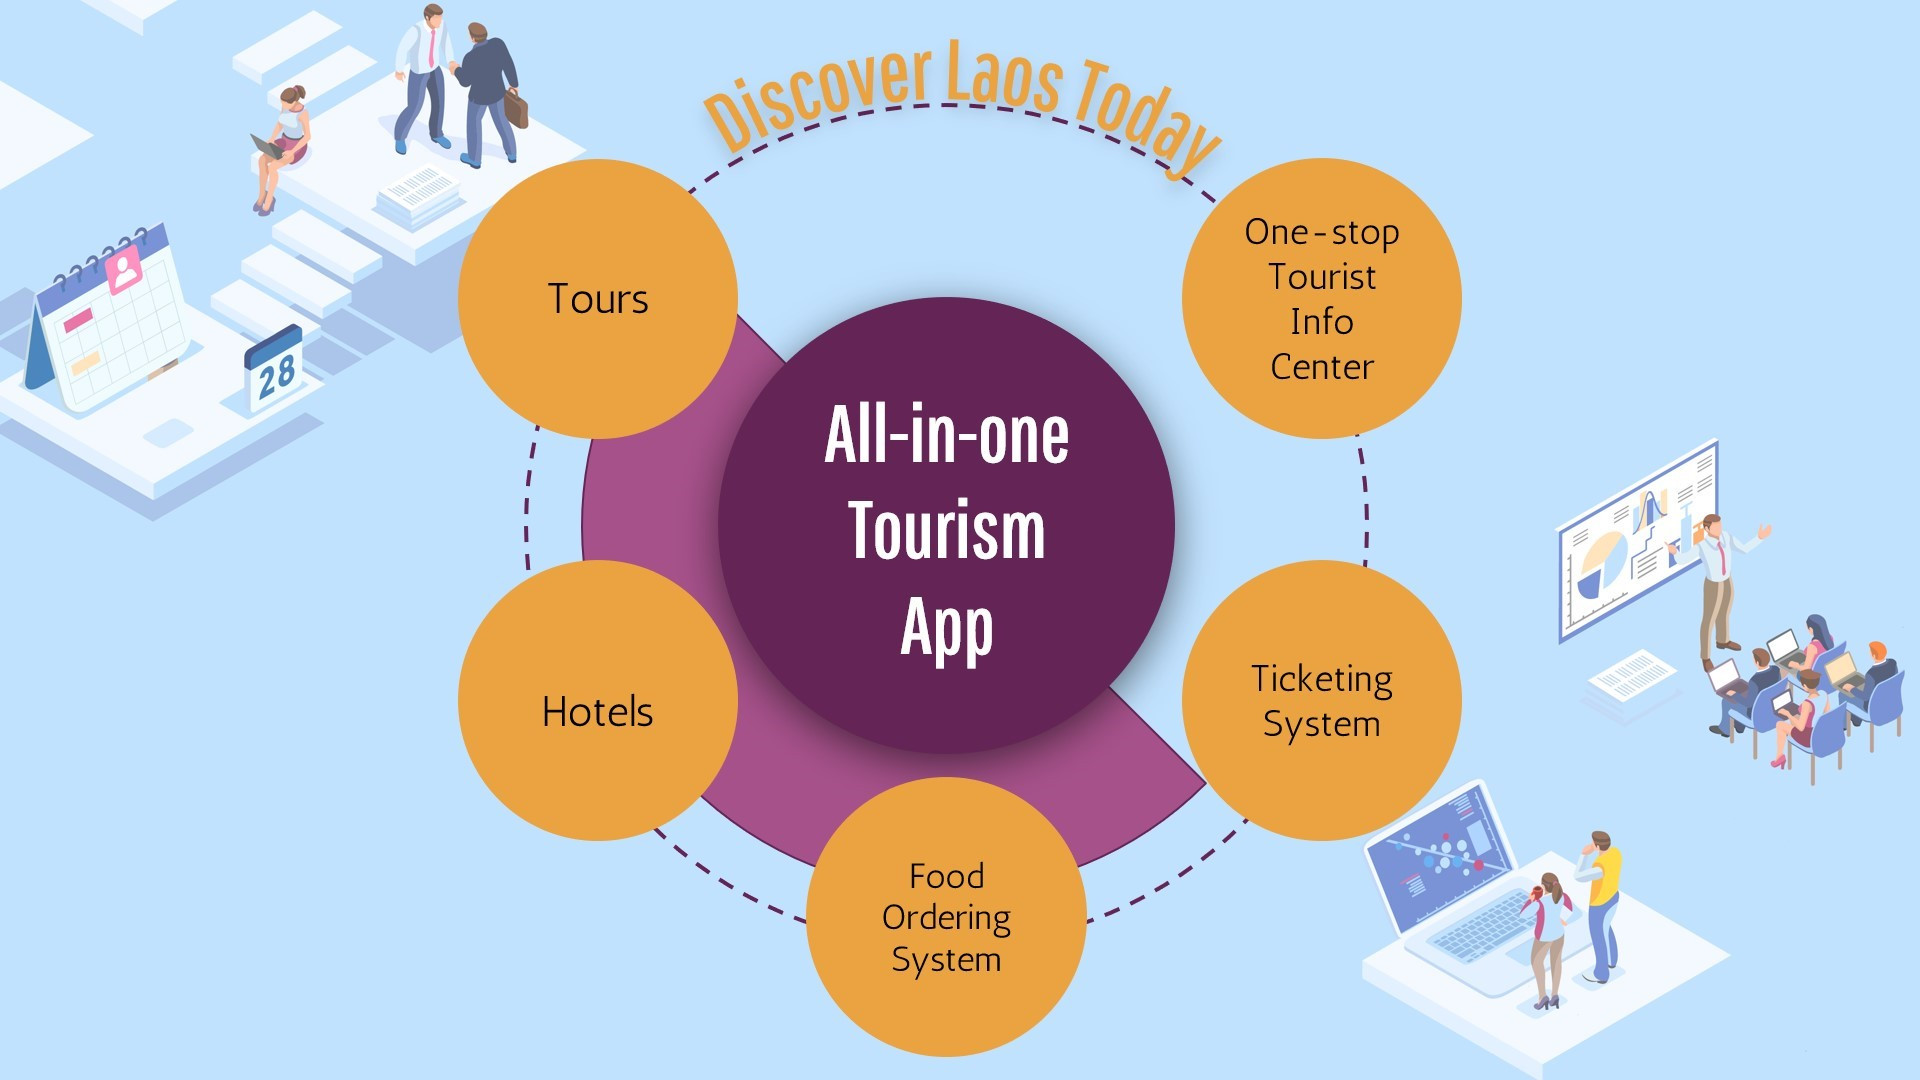 Discover Laos Today完成了从MyLaoTours到老挝首家在线旅行社（OTA）和目的地营销平台的重新品牌定位。